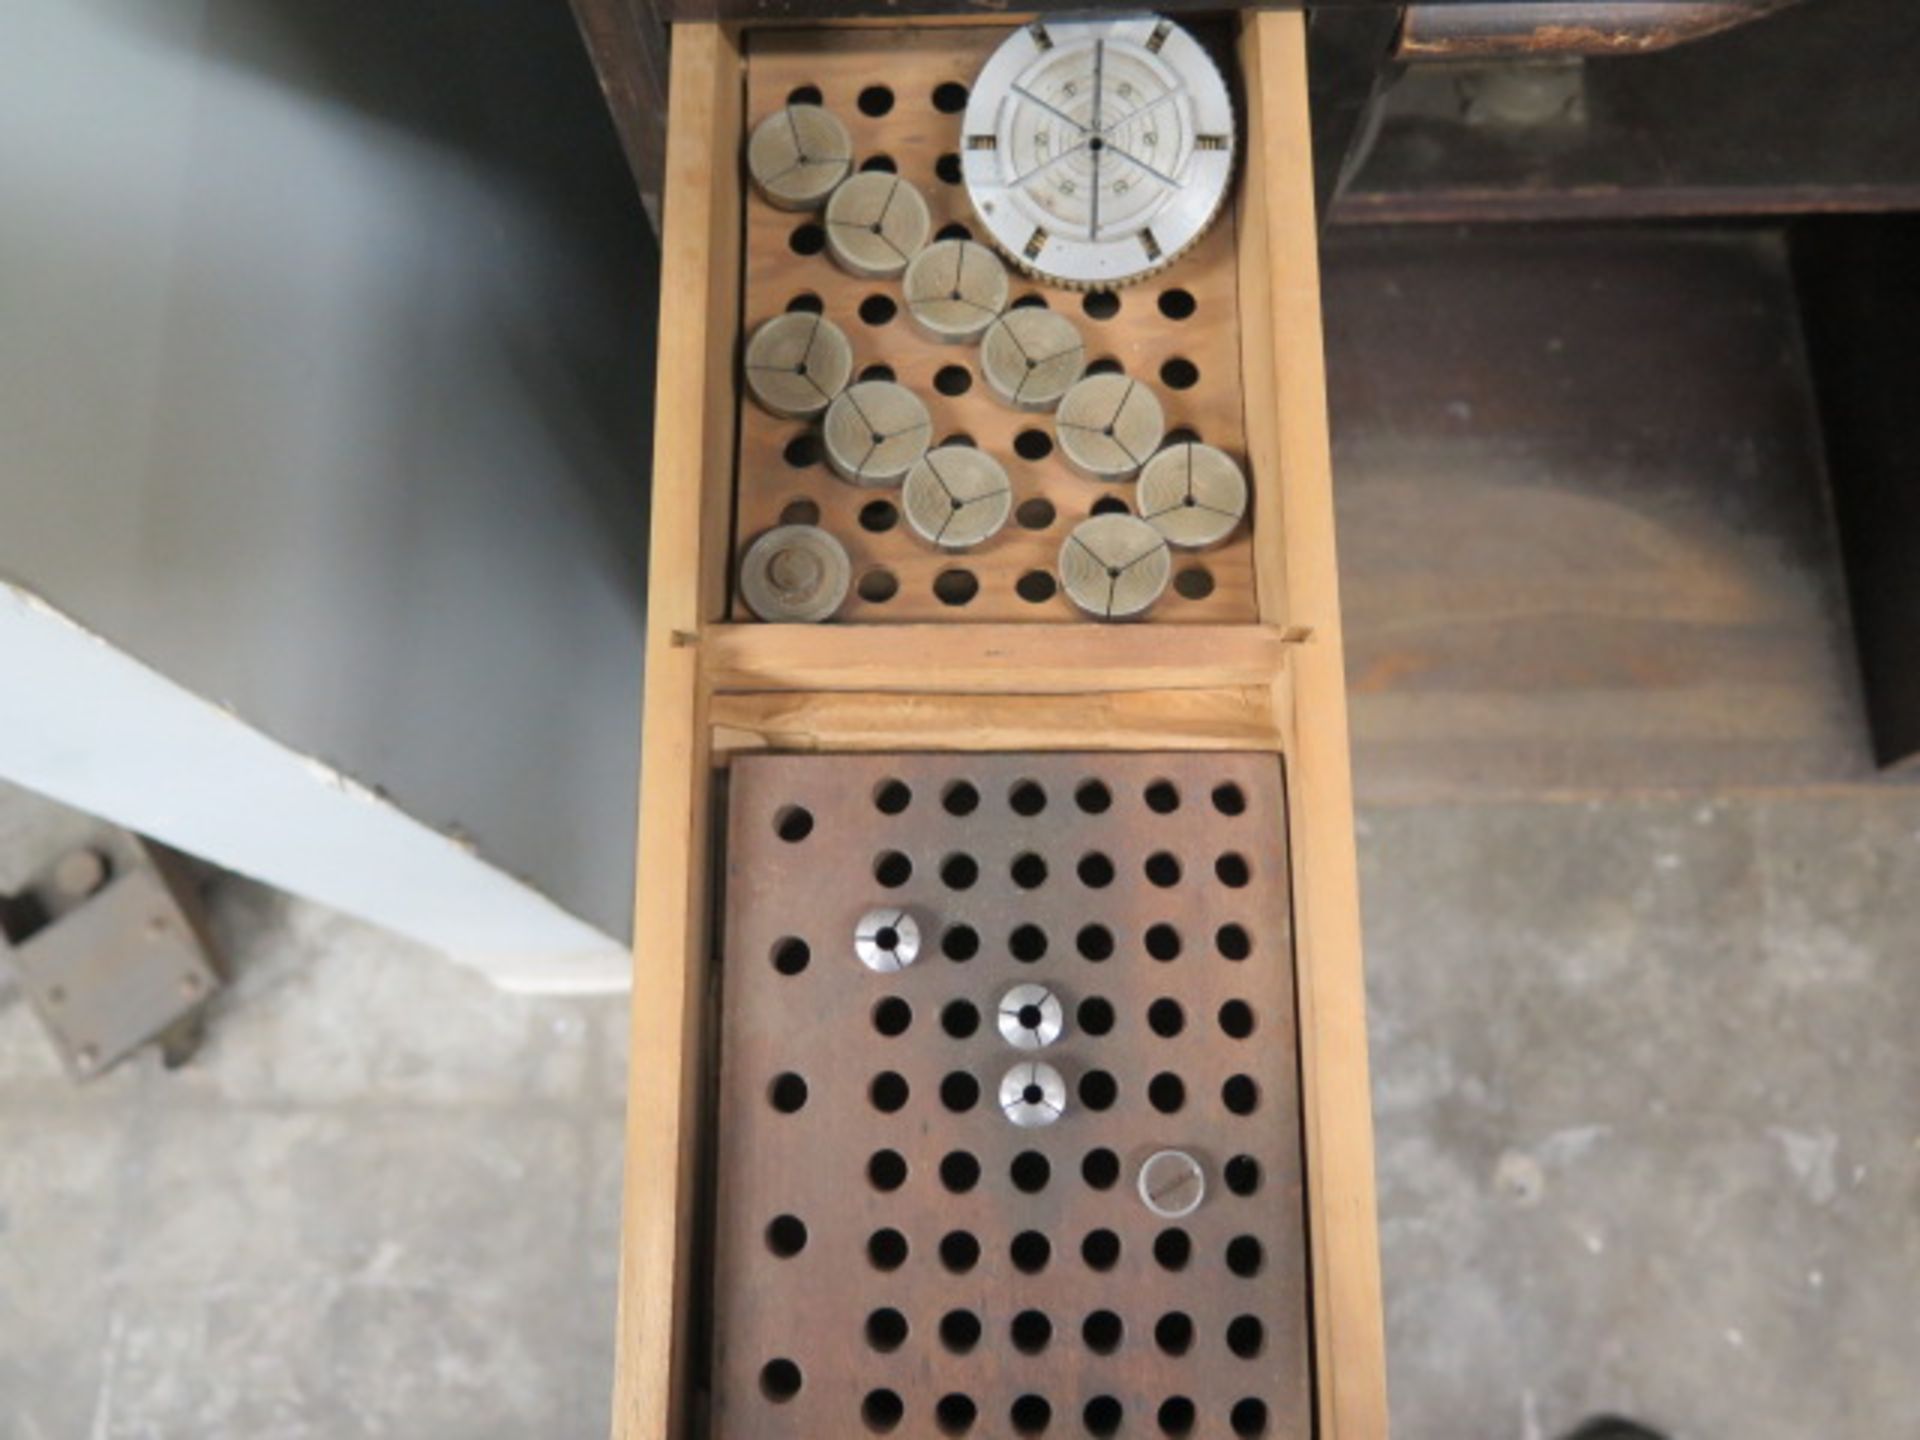 Derbyshire Watch Makers Lathe w/ 4-Speeds, Cross Slide, Collet Sets, Tooling, JH Rosenberg Cabinet - Image 11 of 11